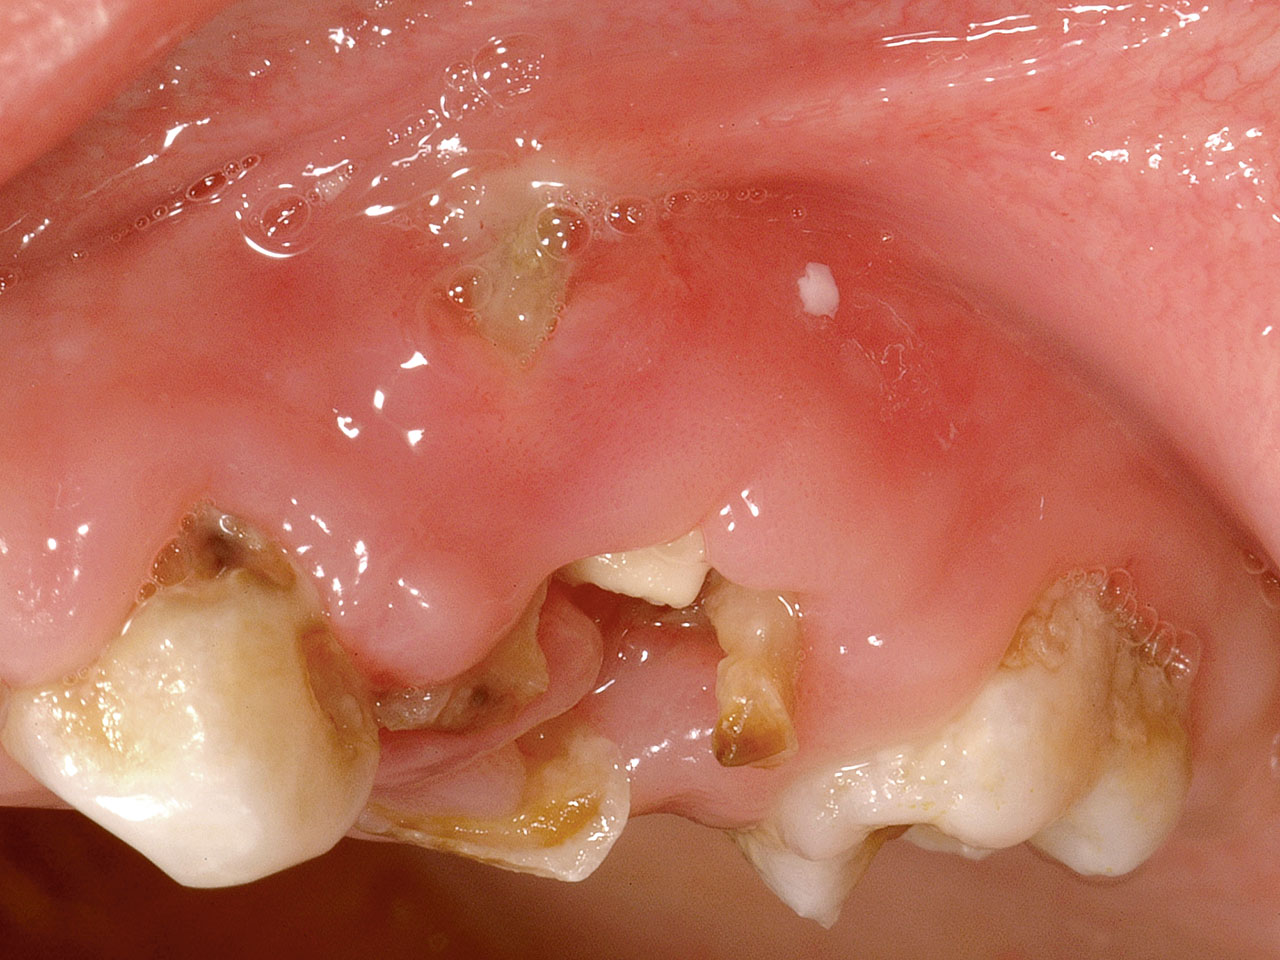 Abb. 9c Die klinische Situation in Regio 54 zeigt die orale Freilegung des Zahnkeims 14 und die infolge des osteolytischen Prozesses an Zahn 54 bukkal exponierte Wurzelspitze.